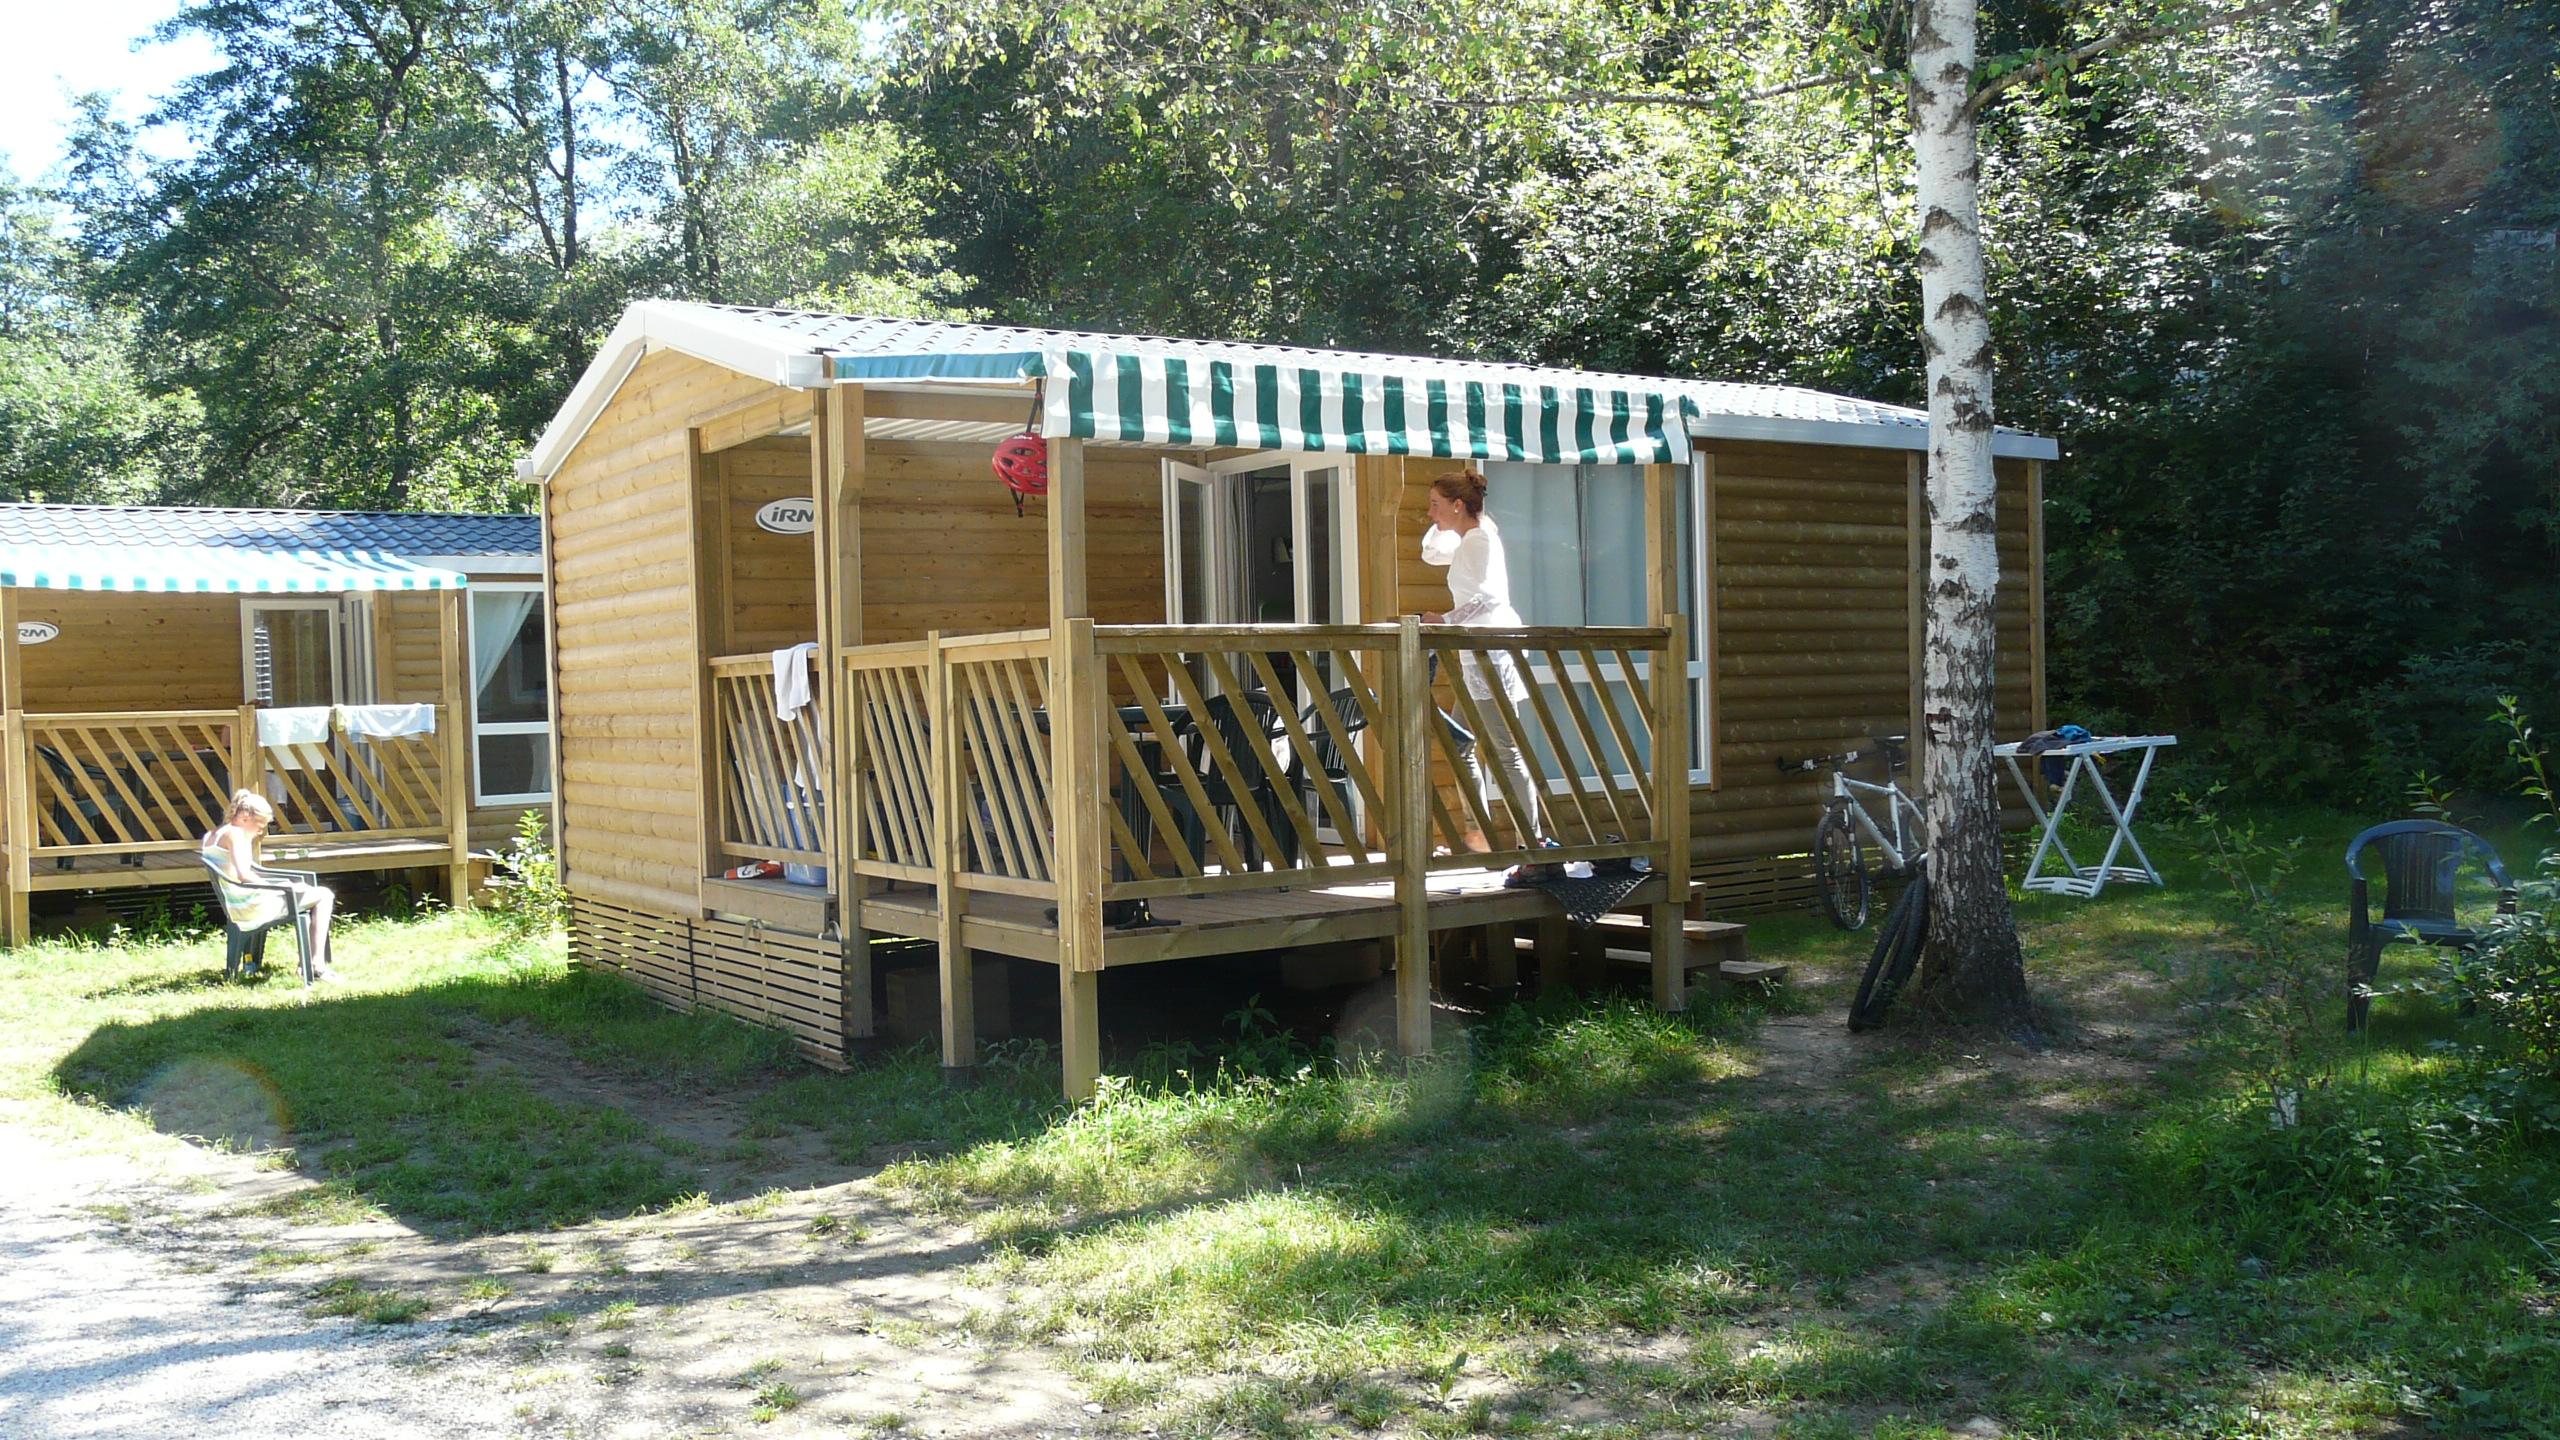 Huuraccommodatie - Stacaravan 2 Slaapkamers Rate 5 Personen - Camping Ser Sirant